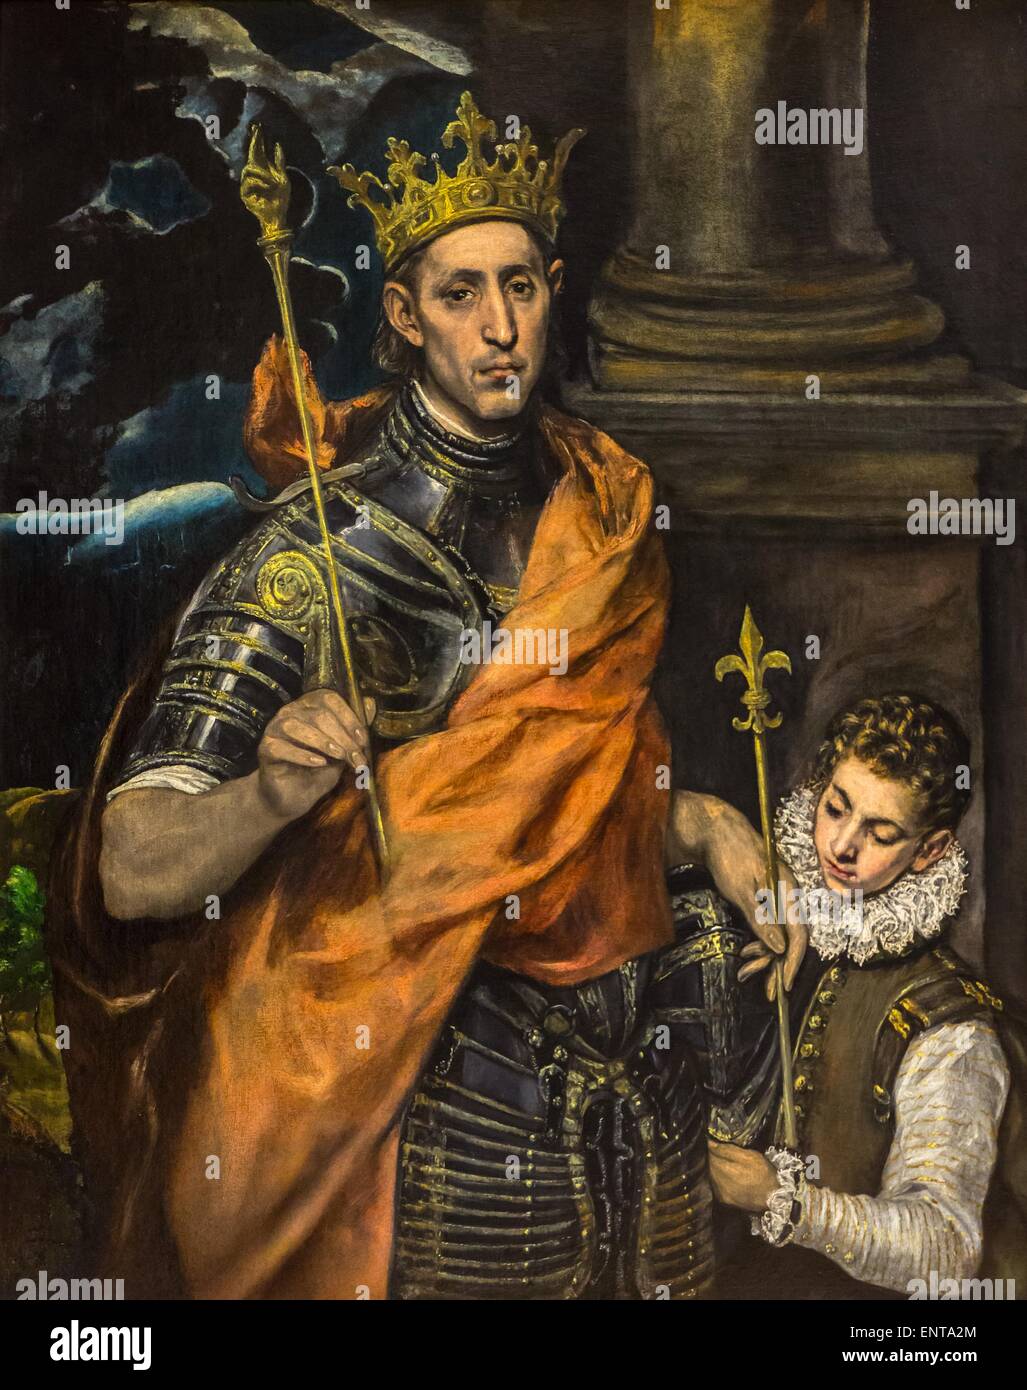 Saint Louis (Luis IX de Francia), el rey de Francia y una página 02/10/2013 - Colección del siglo XVI. Foto de stock